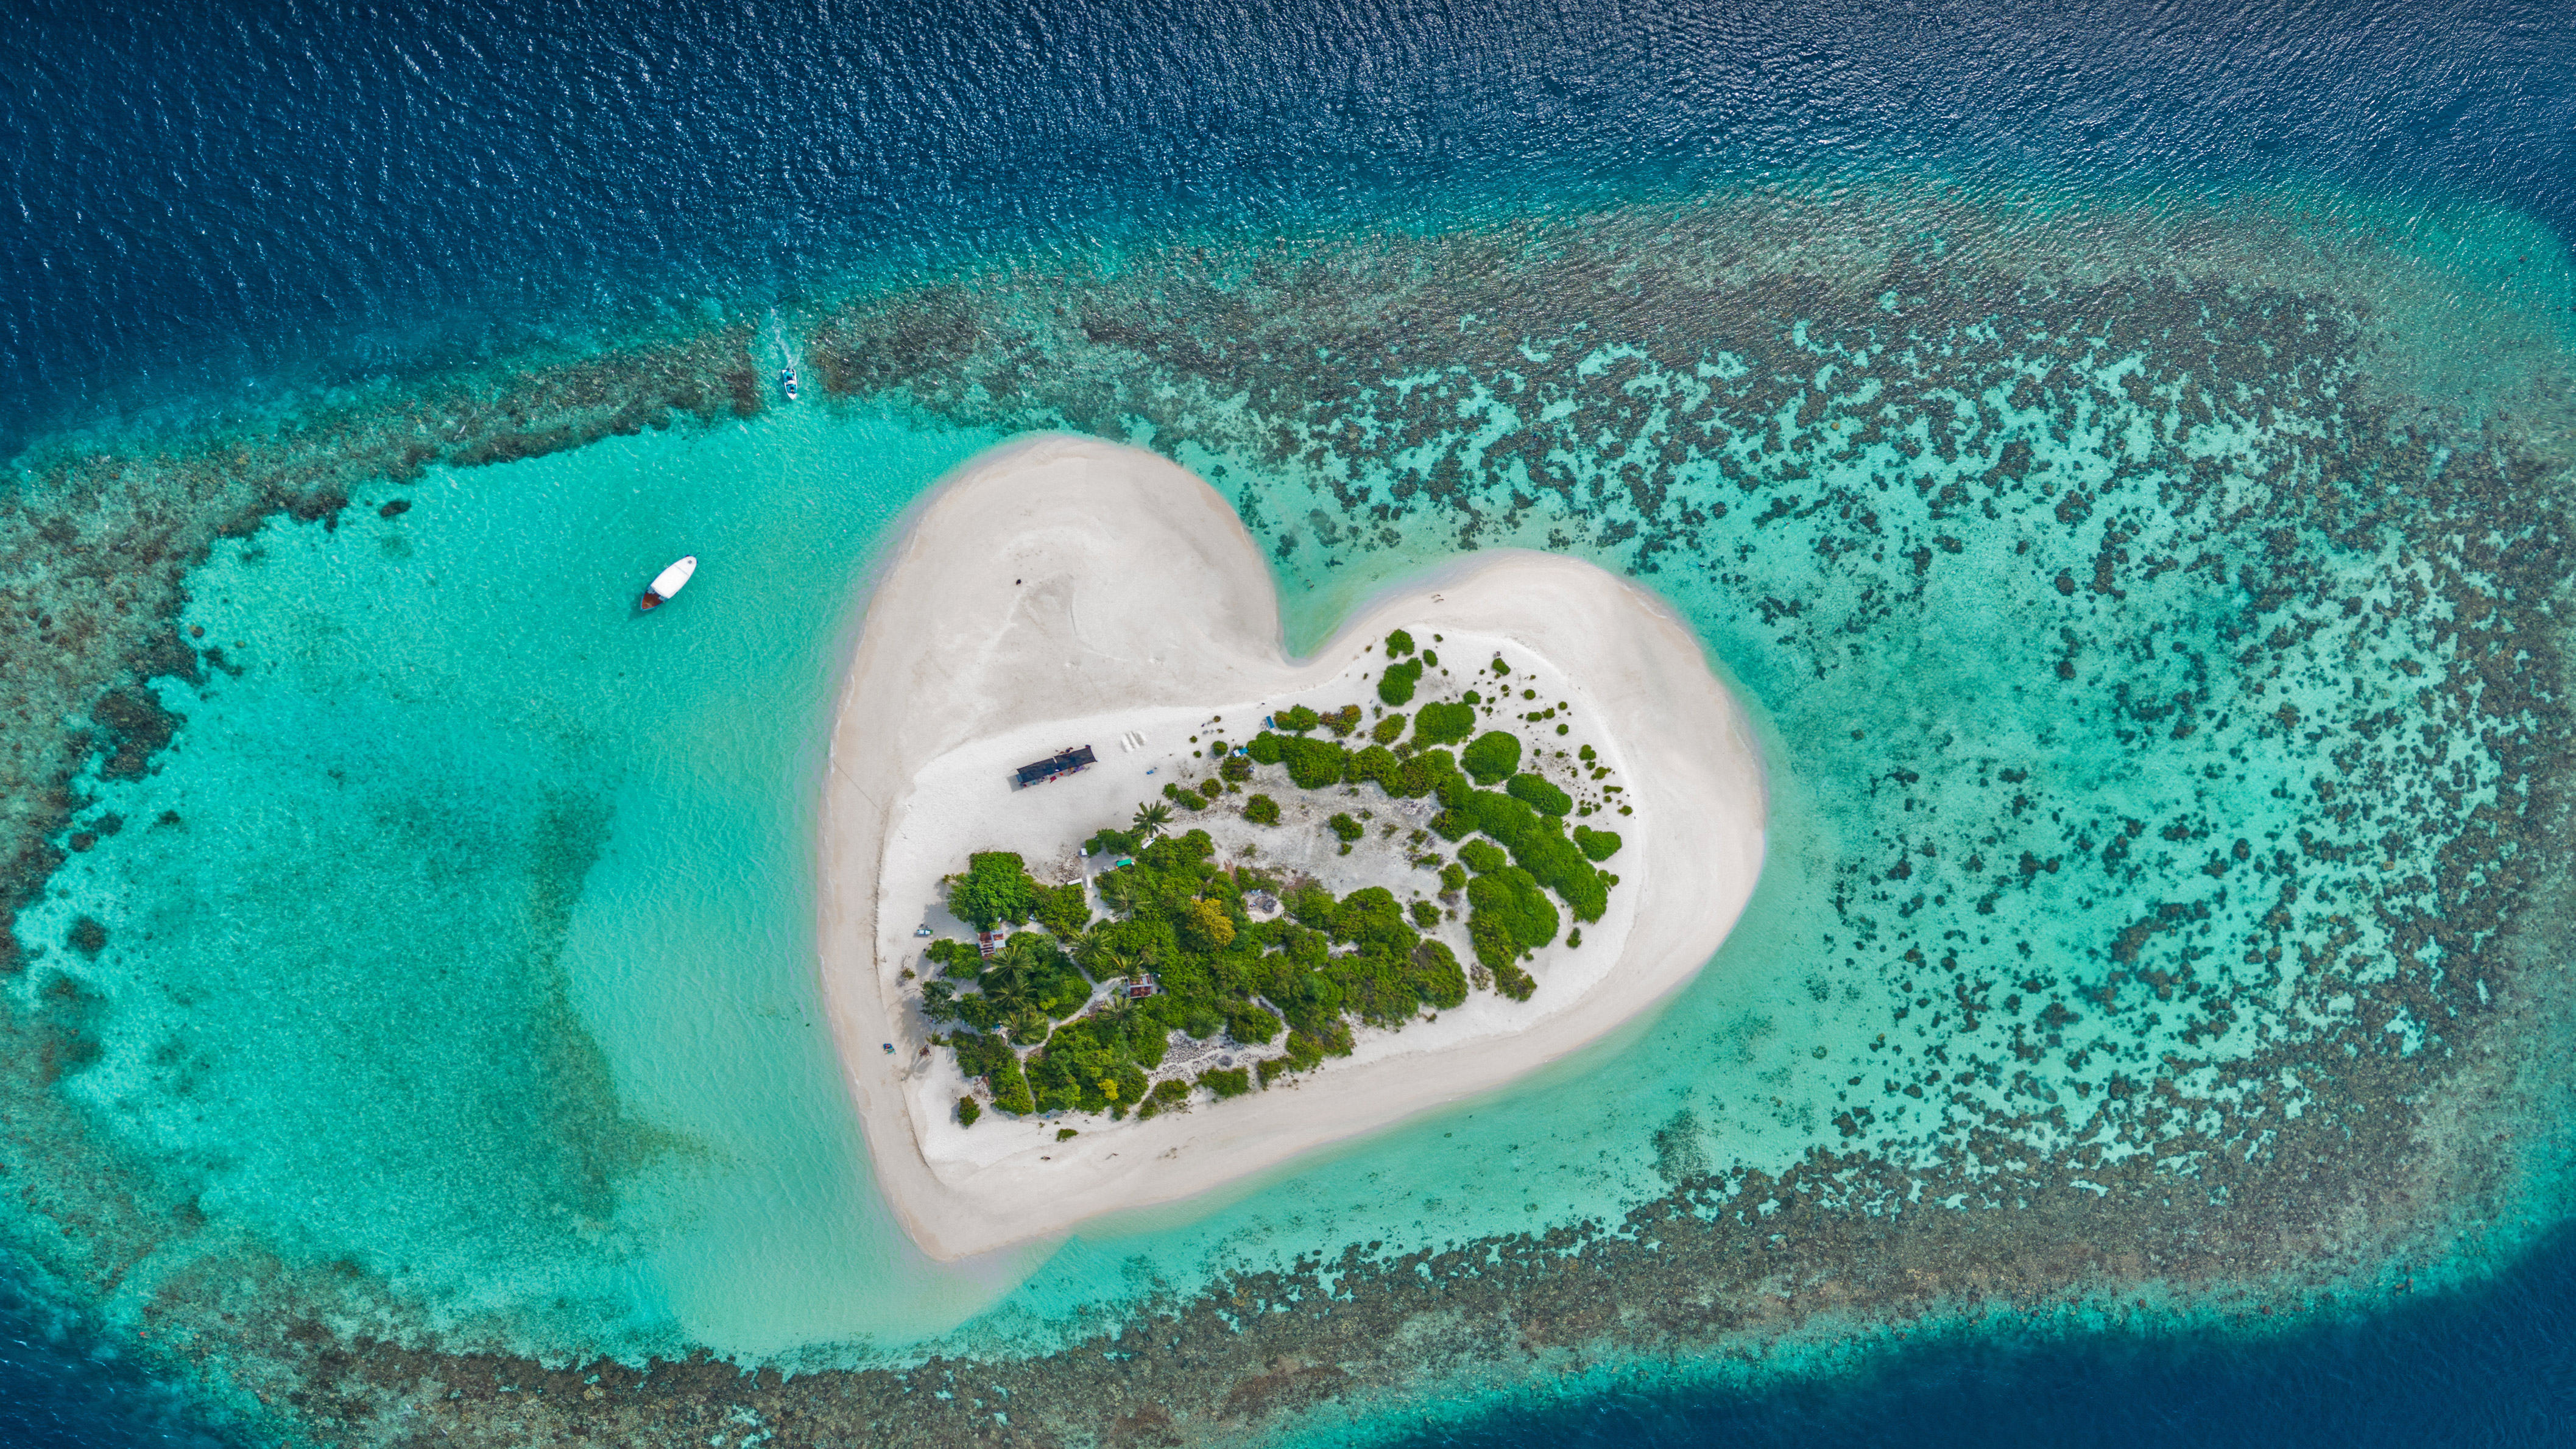 Скачать обои бесплатно Остров, Мальдивы, Антенна, Земля/природа картинка на рабочий стол ПК